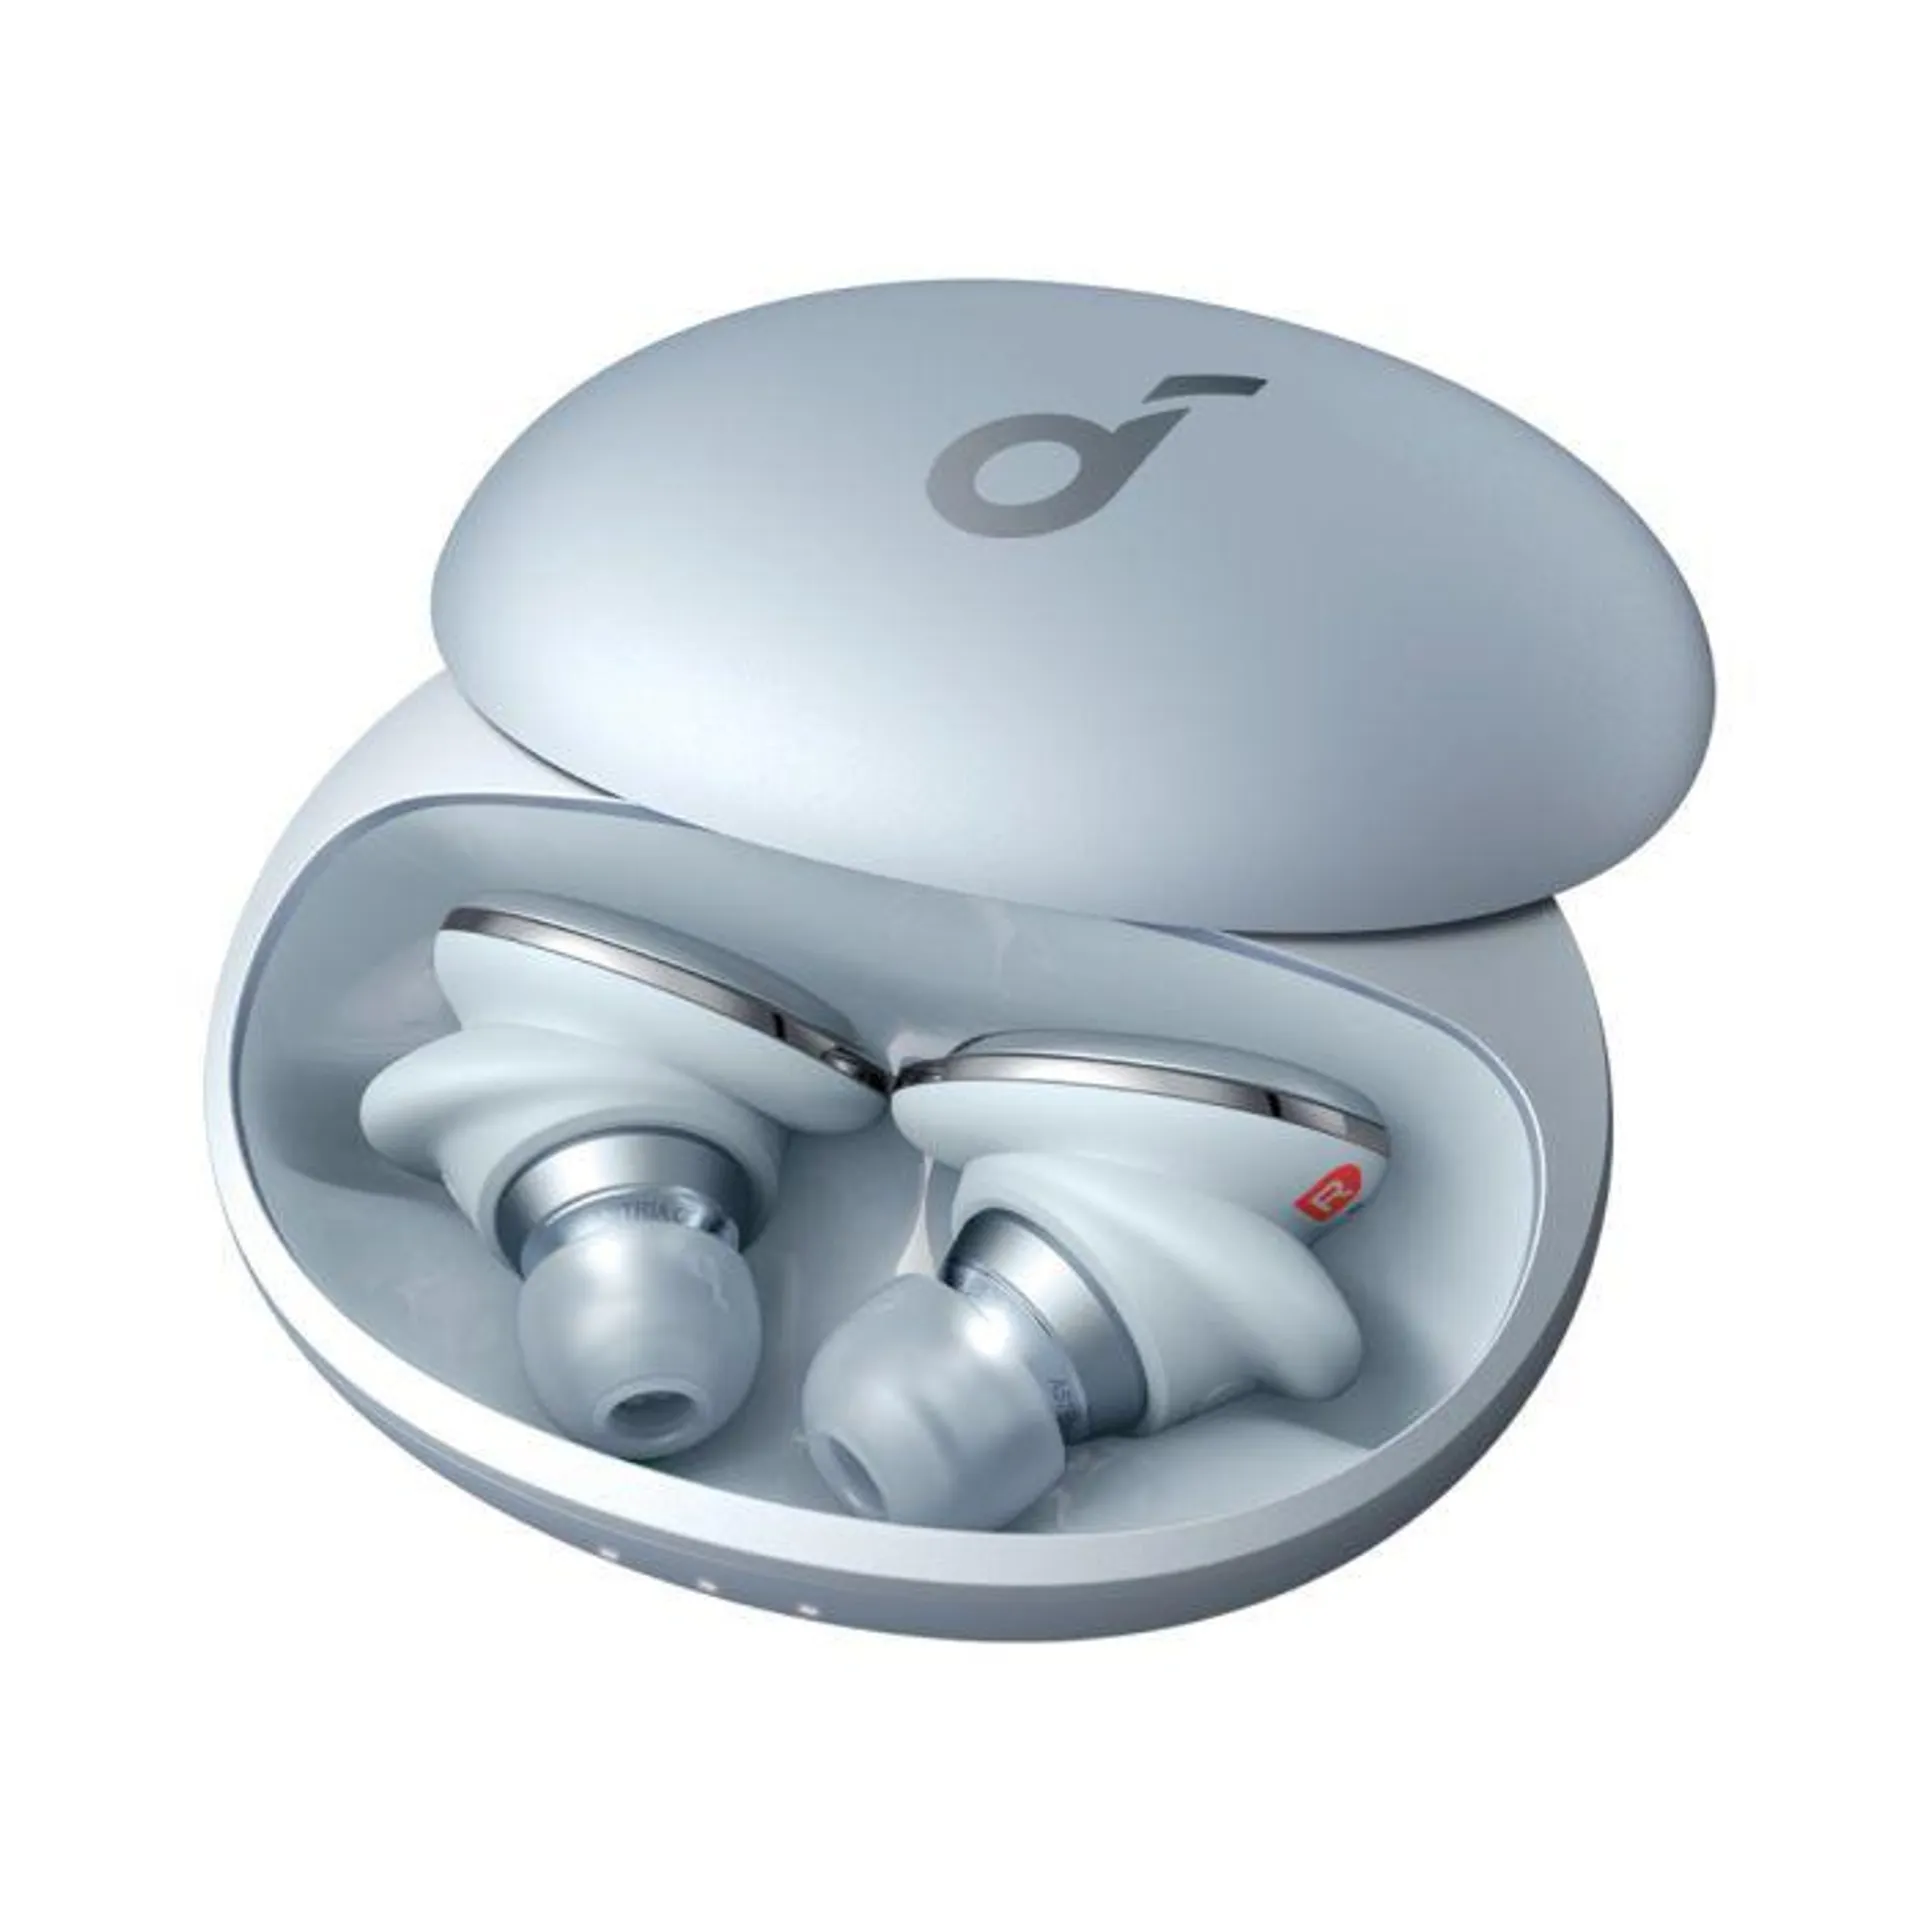 Anker soundcore Liberty 3 Pro True Wireless Earbud - Grey